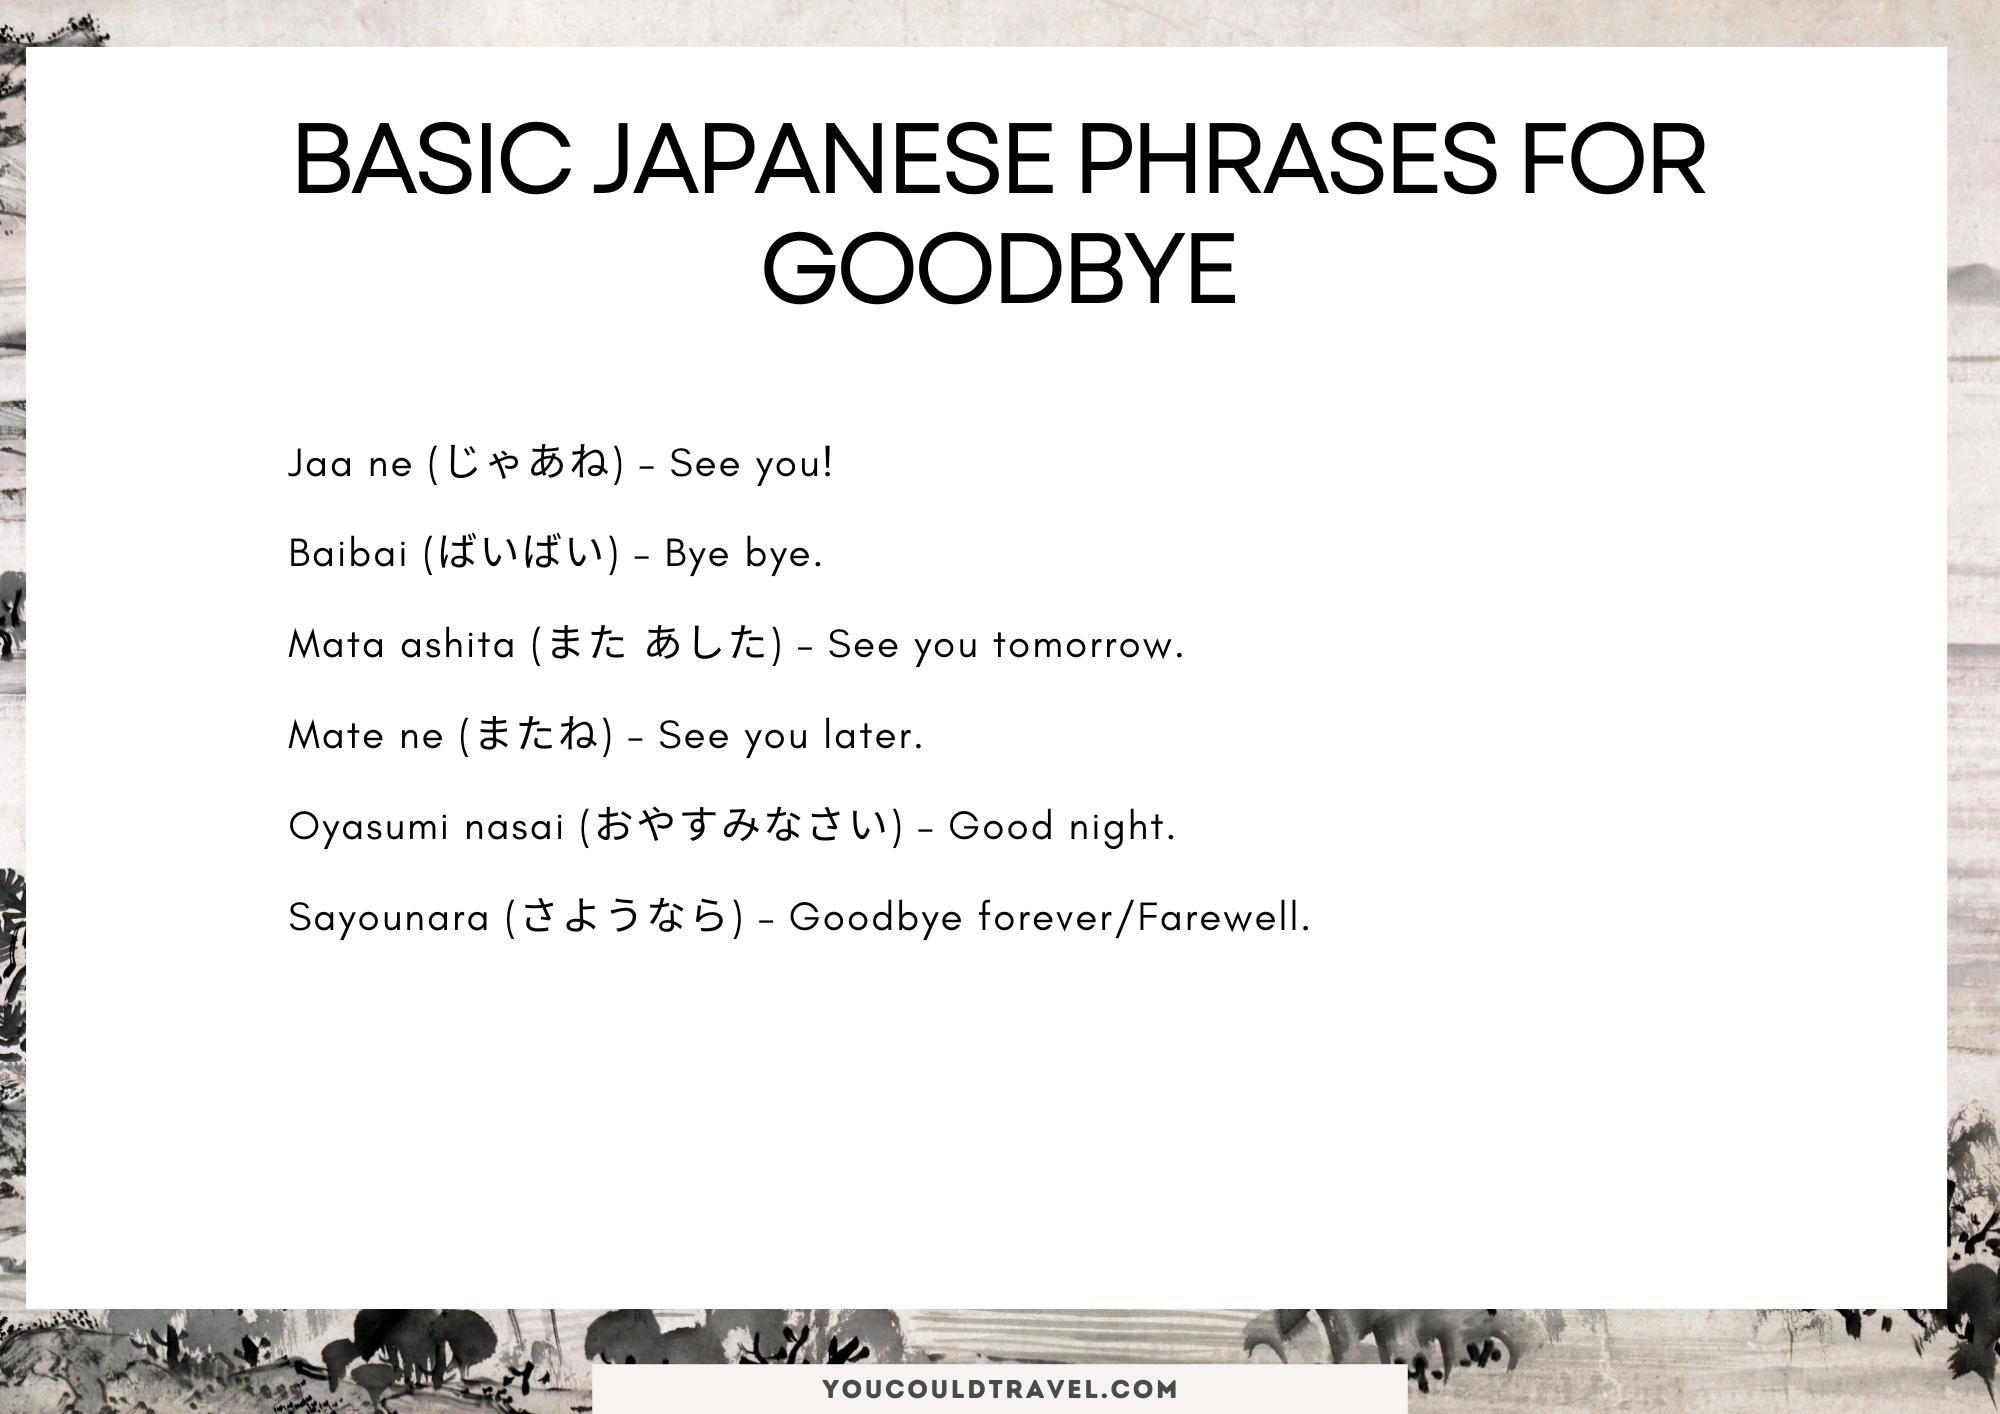 Japanese phrases for goodbye